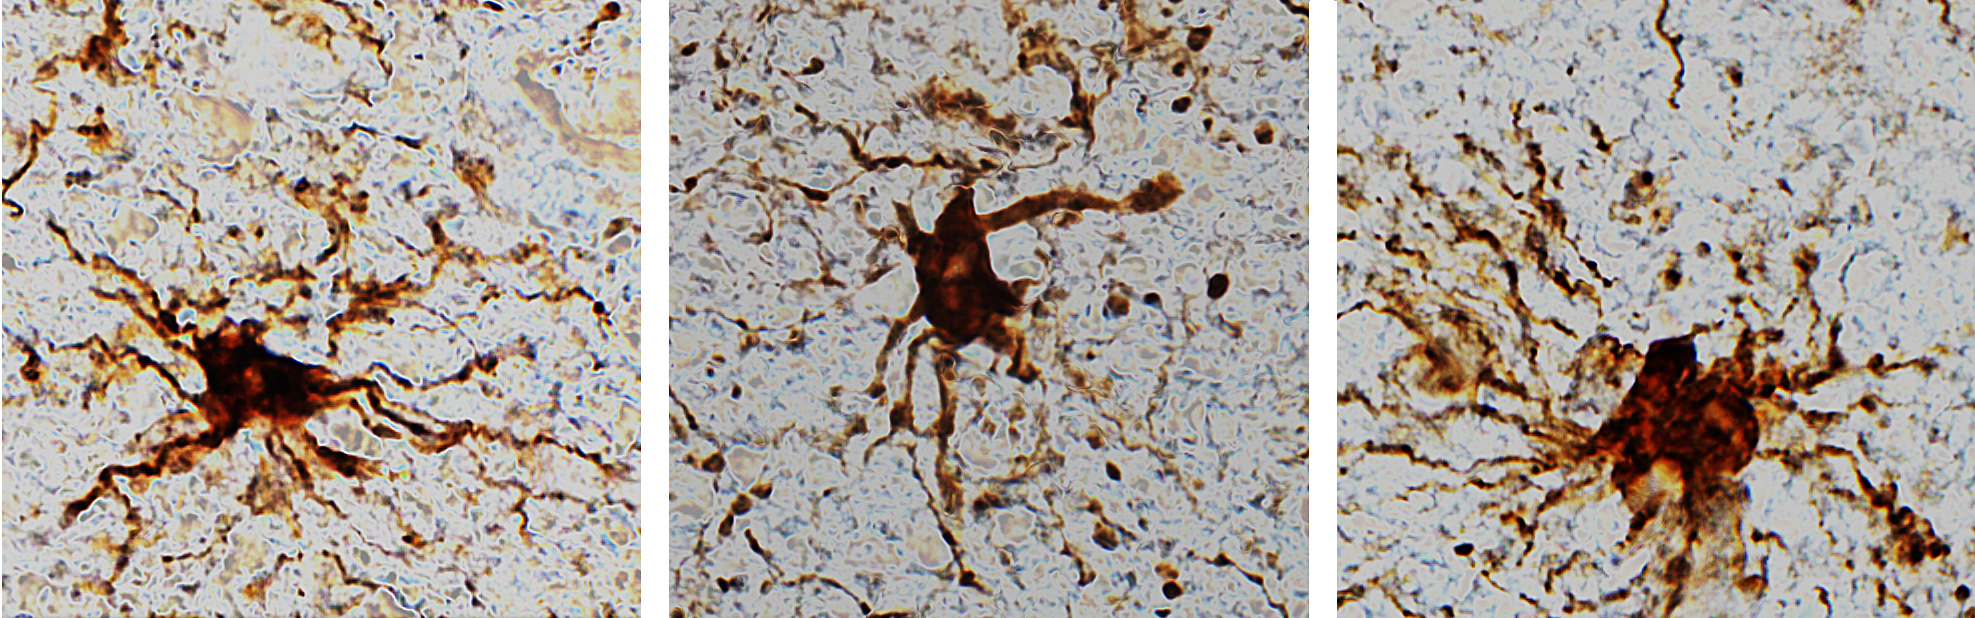 Los genes zombis del cerebro se identificaron luego de estudios en tejidos cerebrales donados.